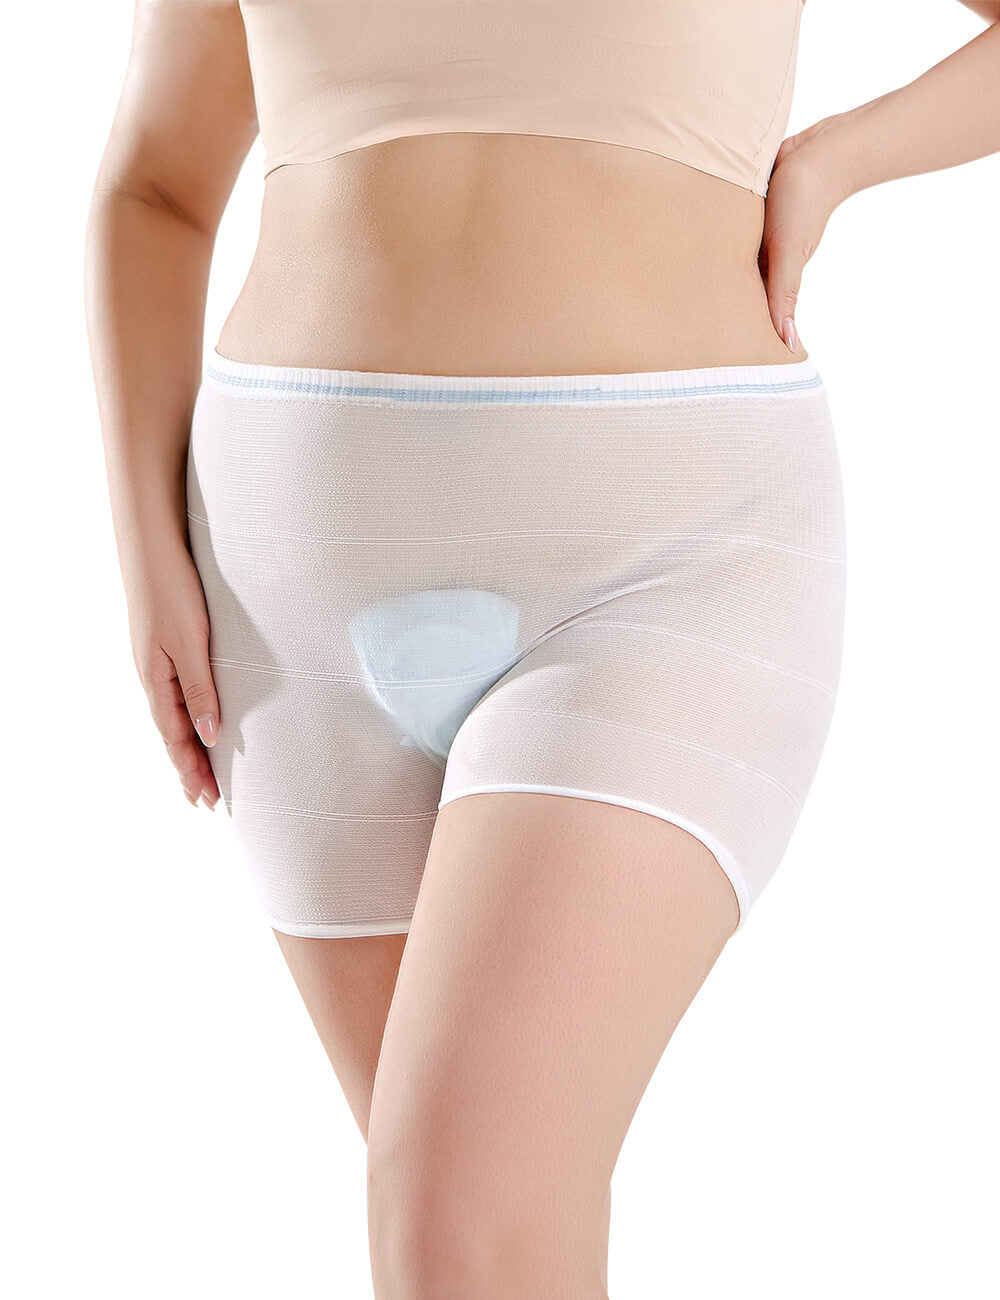 Postpartum Underwear Australia, Recovery Briefs